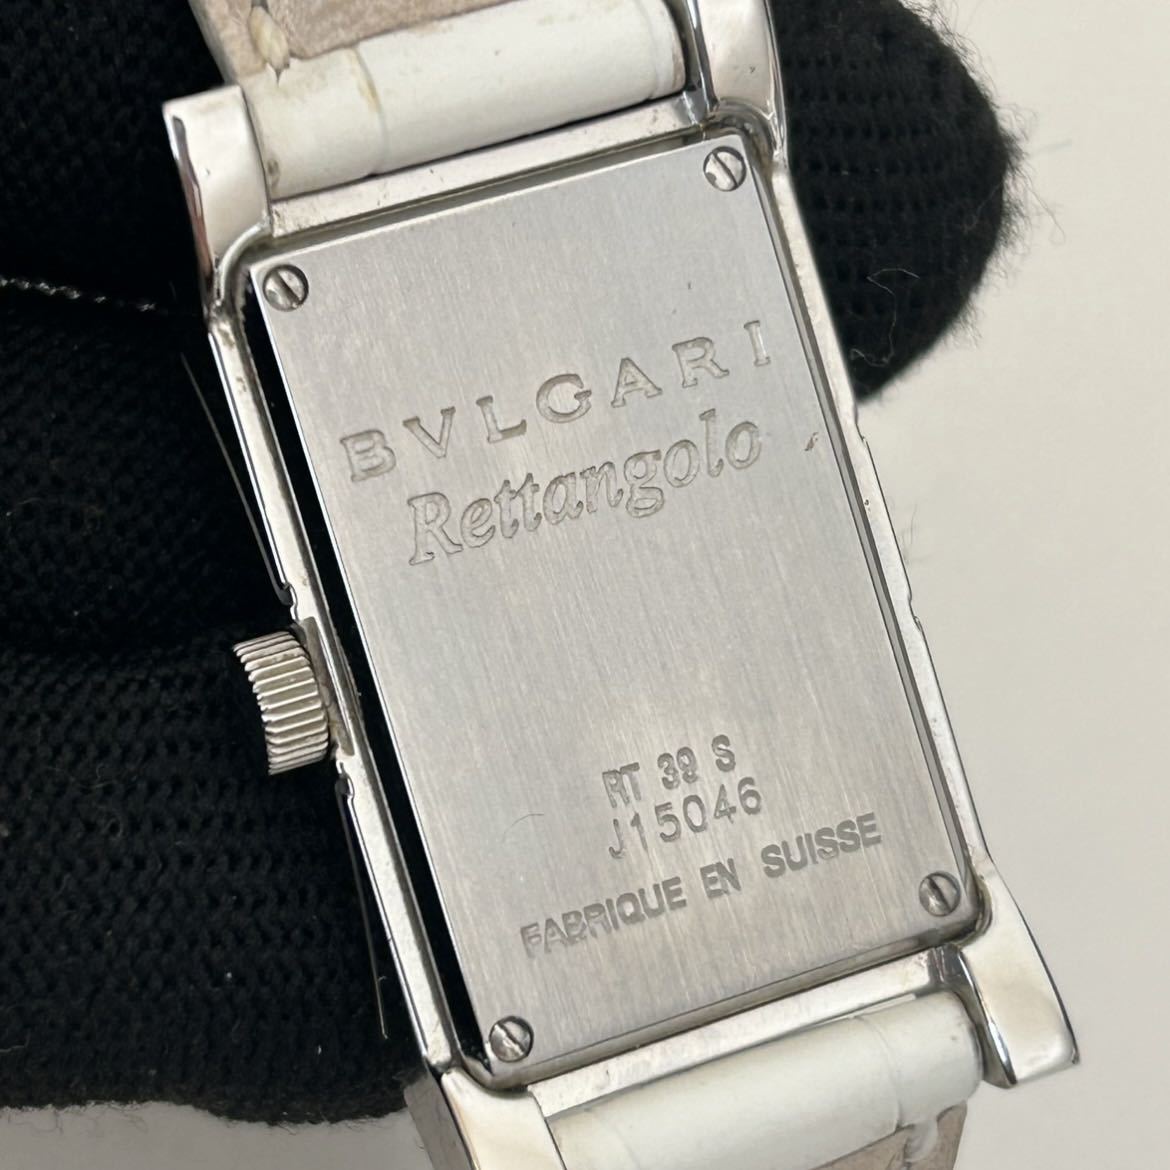 BVLGARI ブルガリ レッタンゴロ 腕時計 ST39S 白文字盤